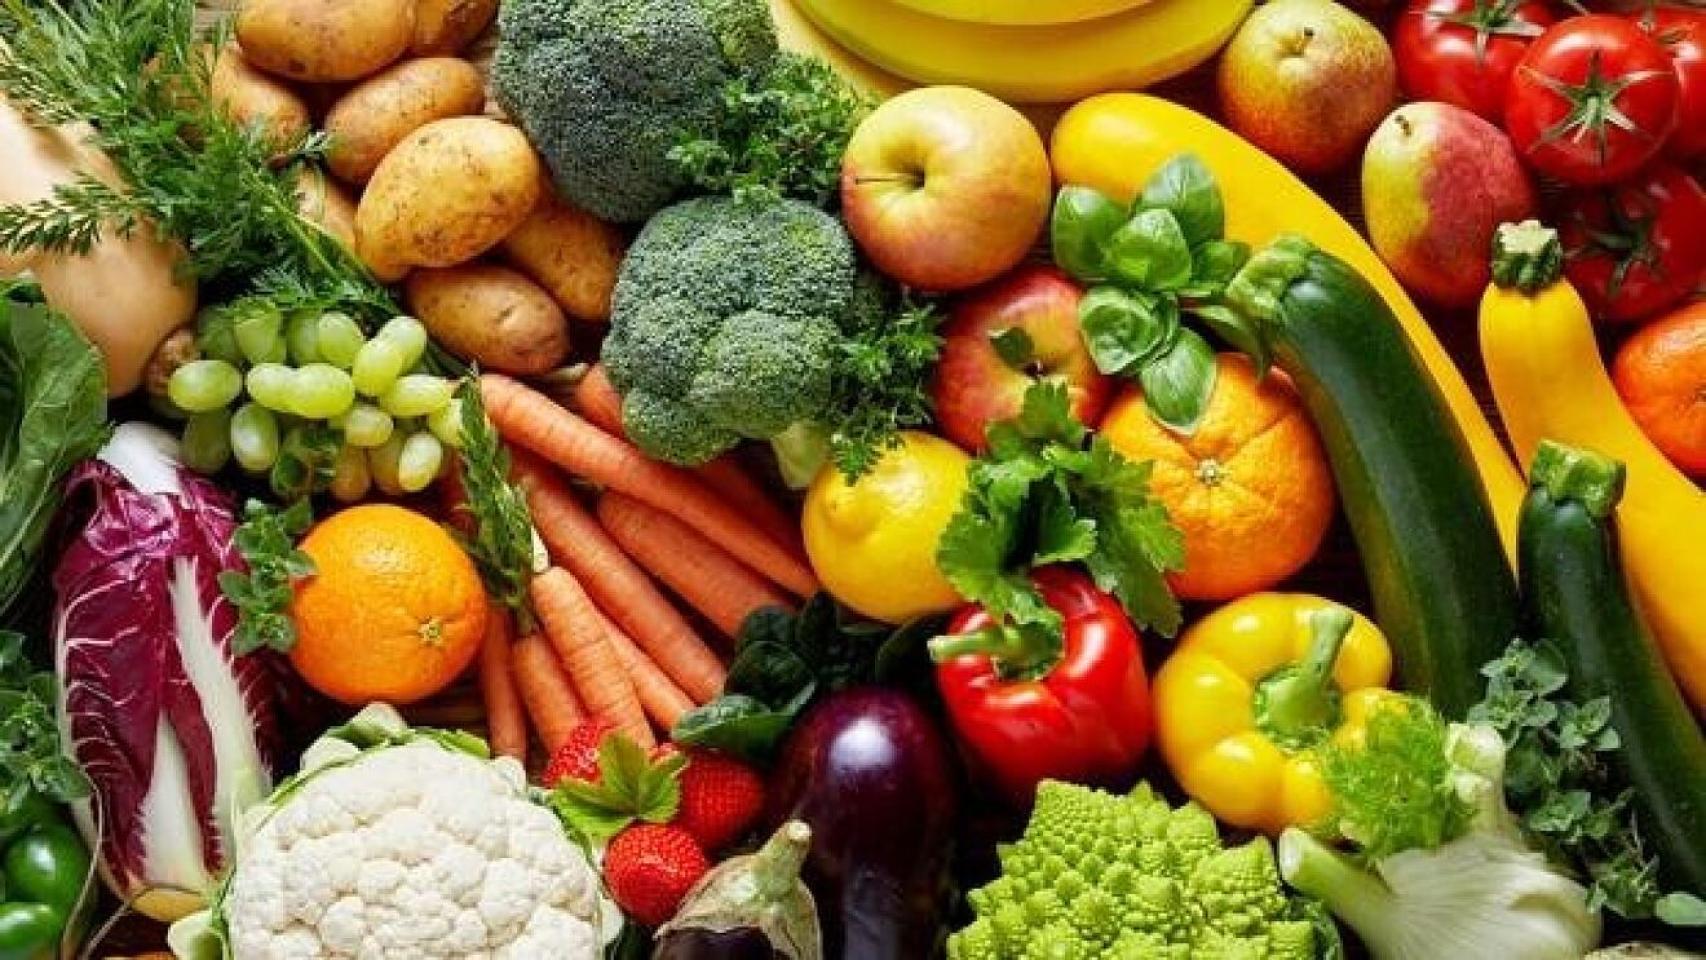 Los trucos infalibles para conservar las verduras frescas en un